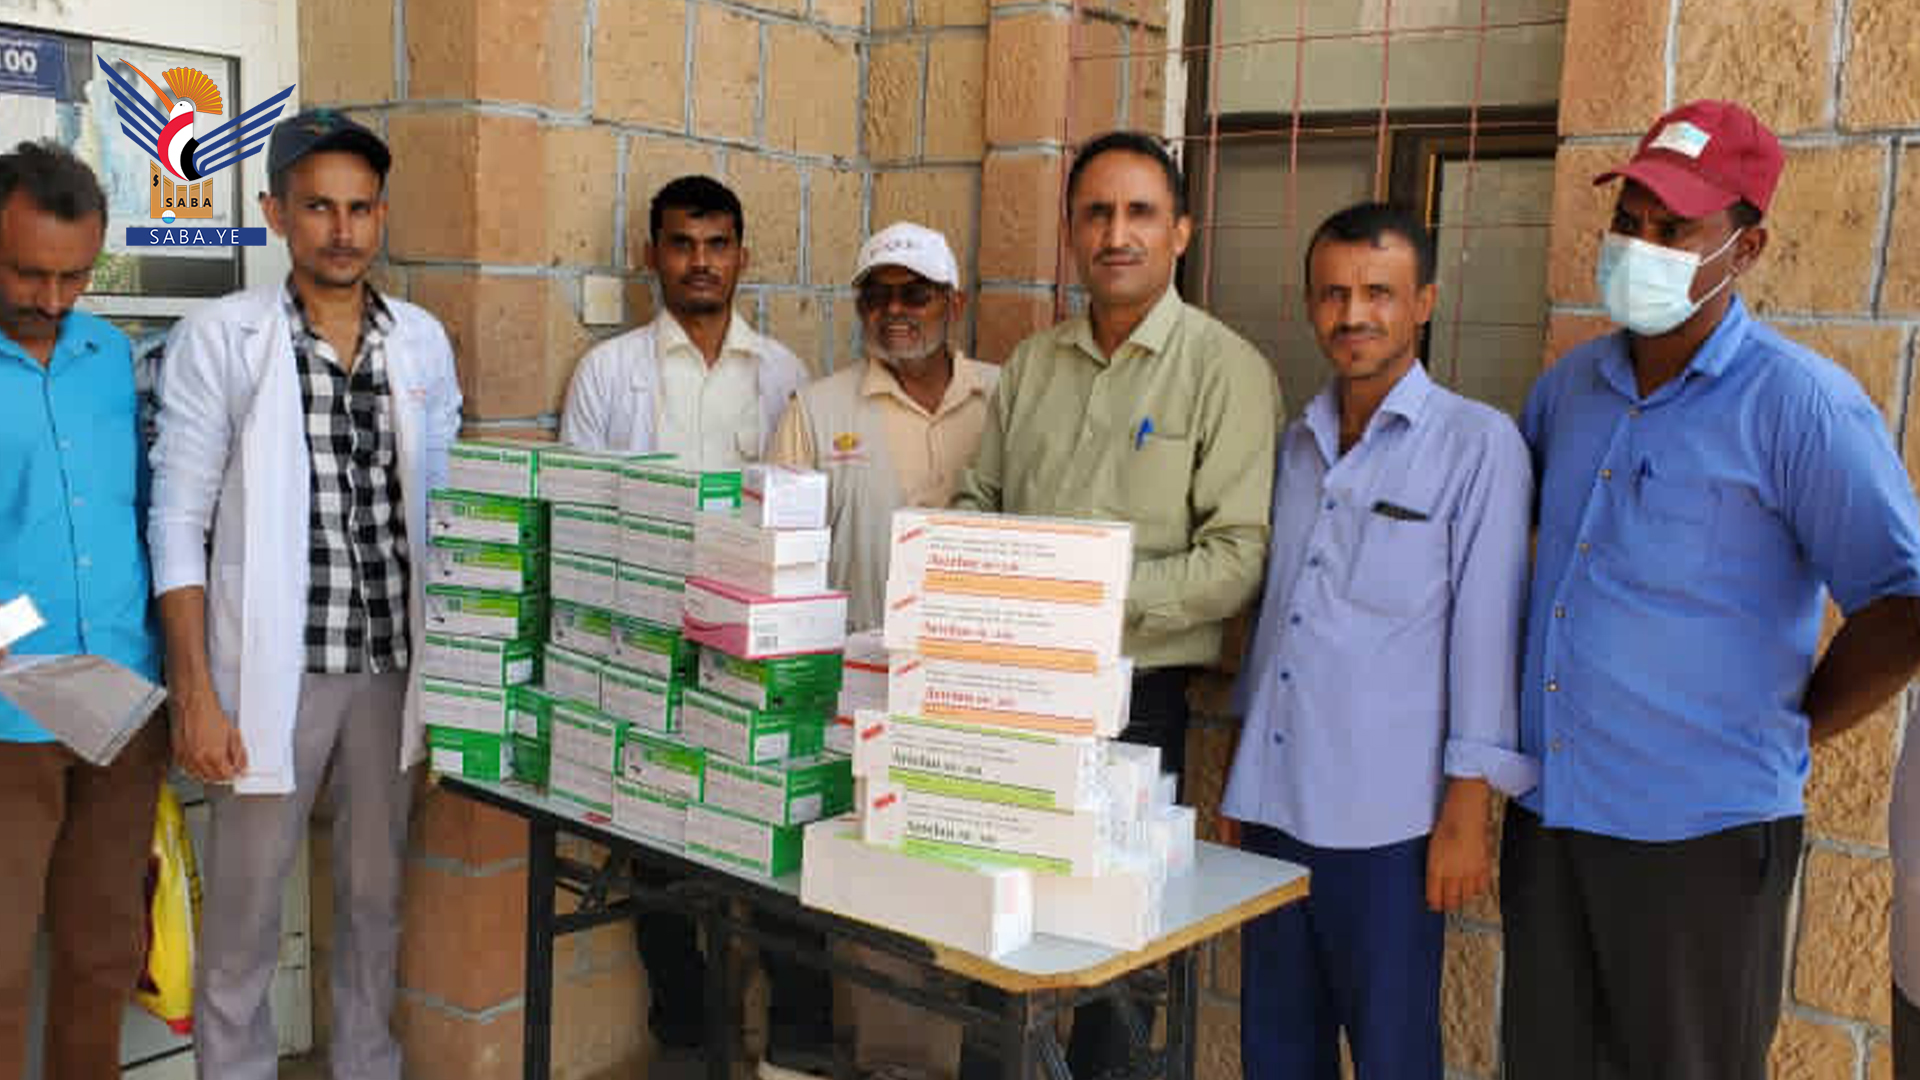 Gesundheitsamt in Hadscha verteilt Anti-Malaria-Medikamente